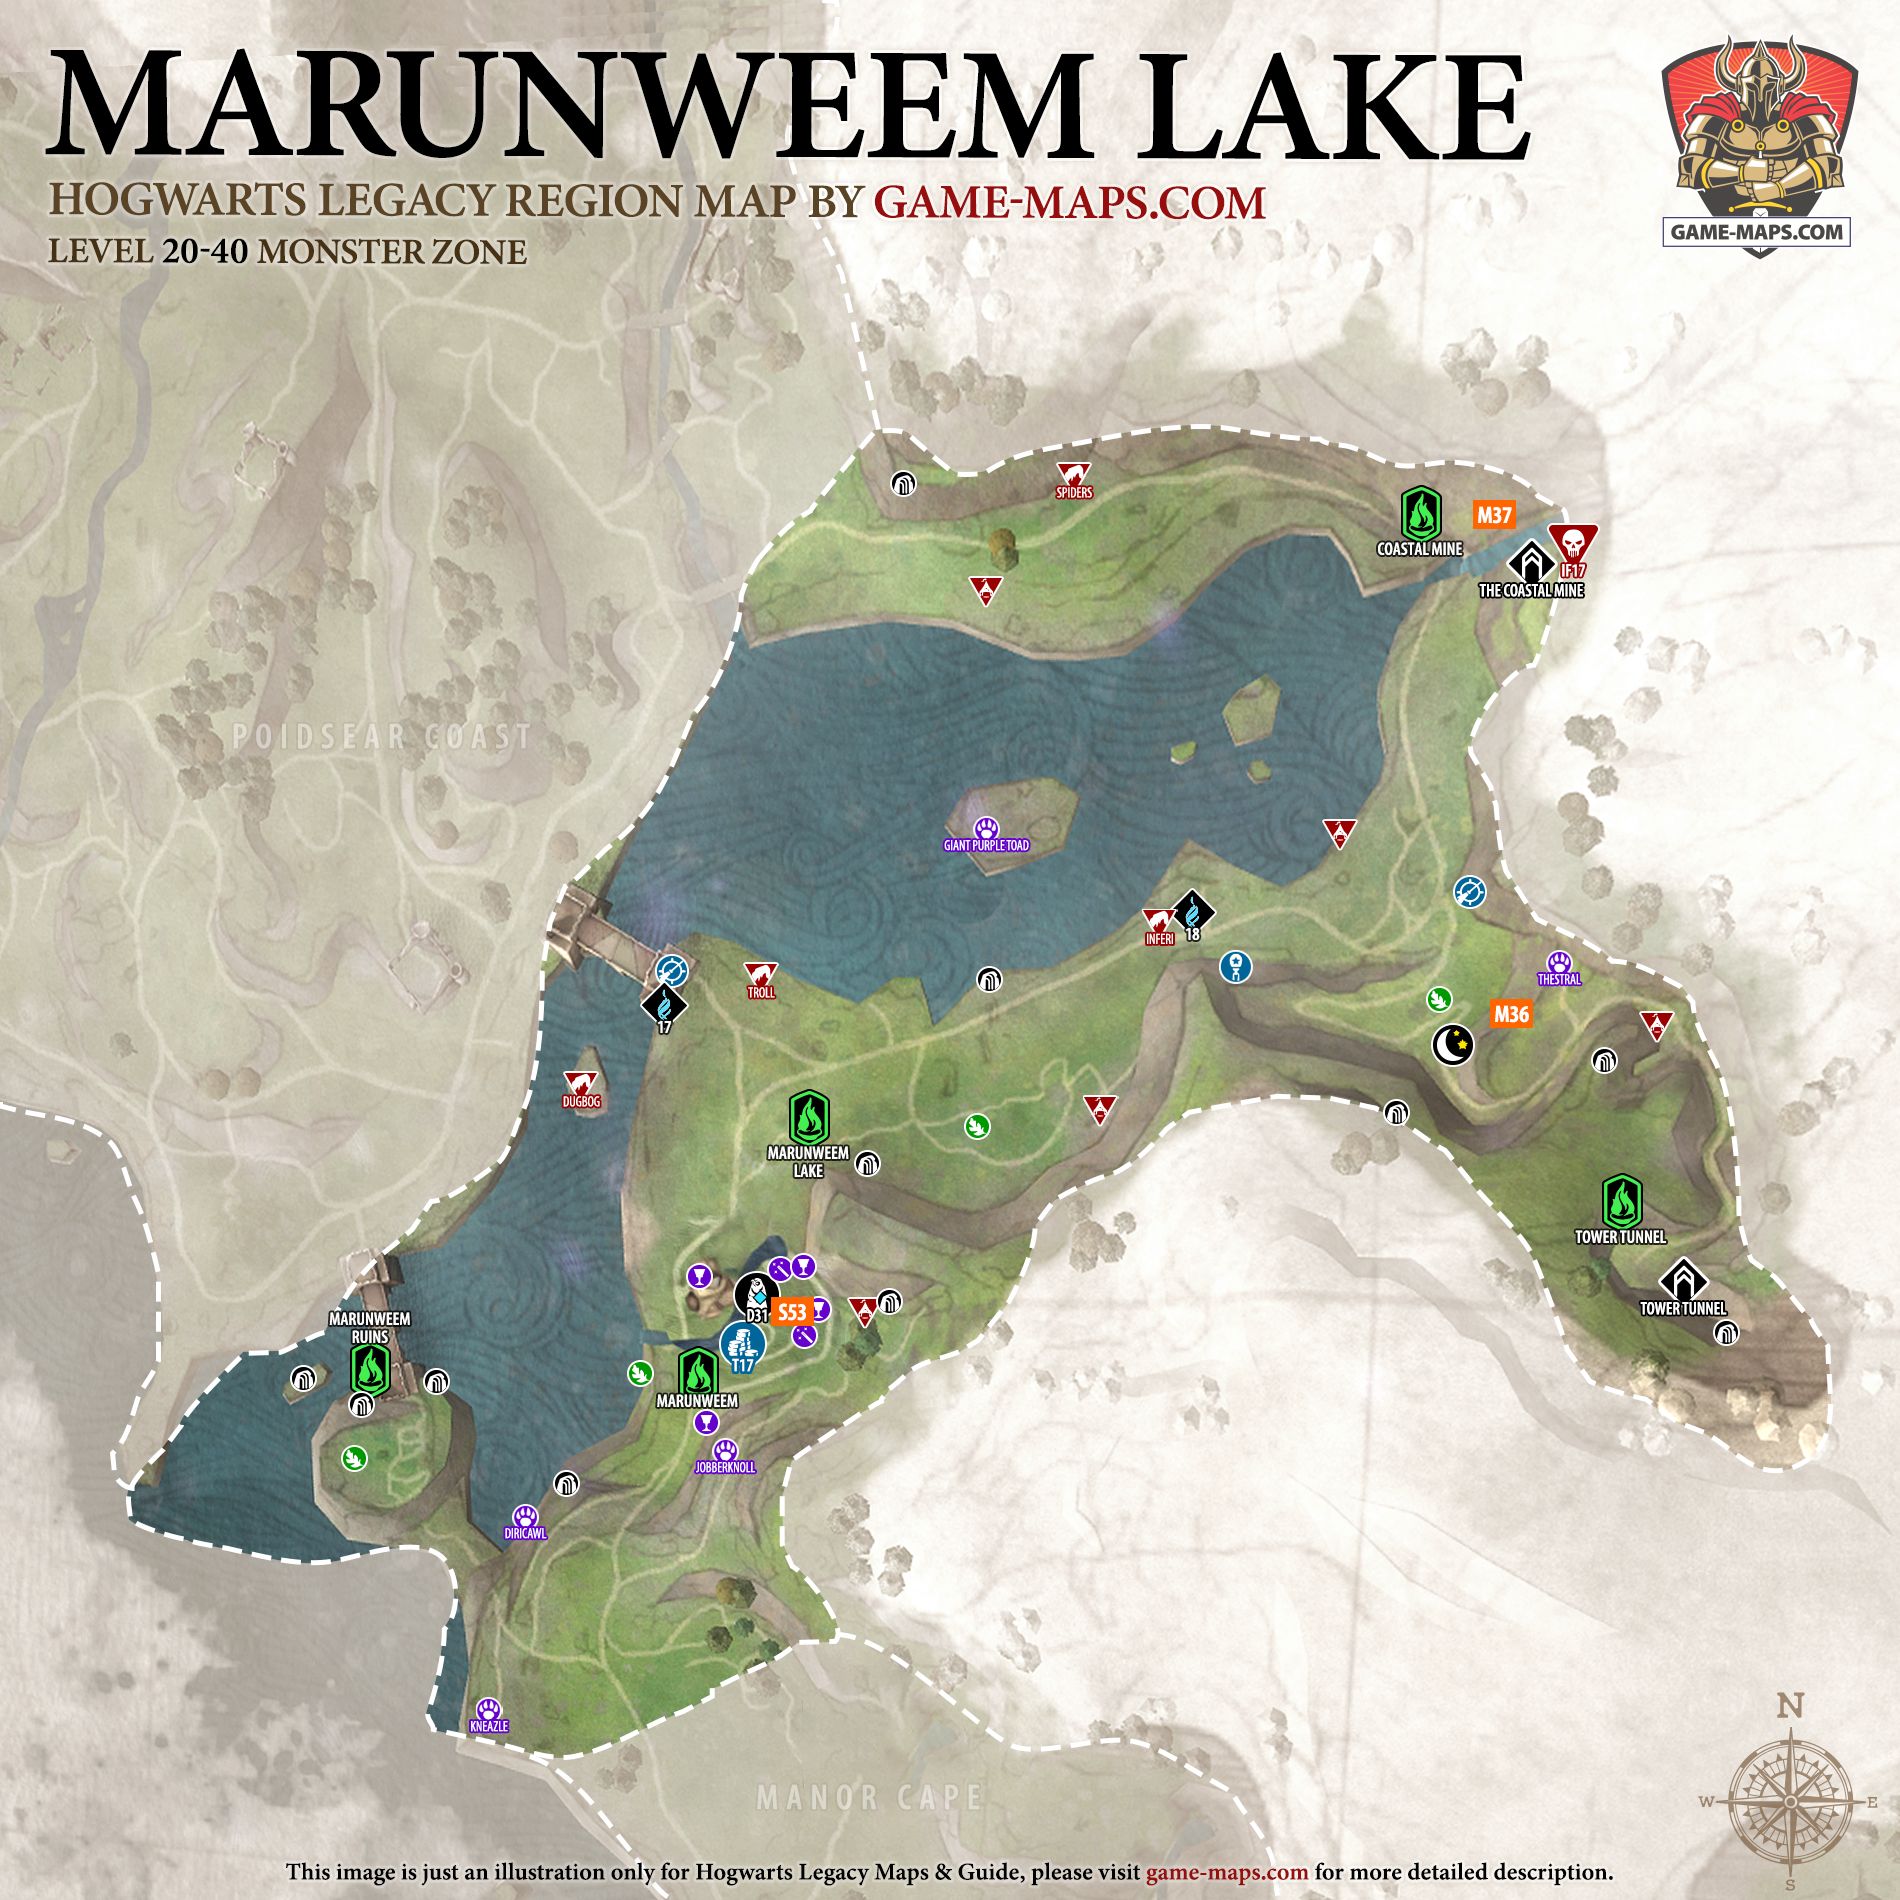 hogwarts legacy marunweem lake landing platforms